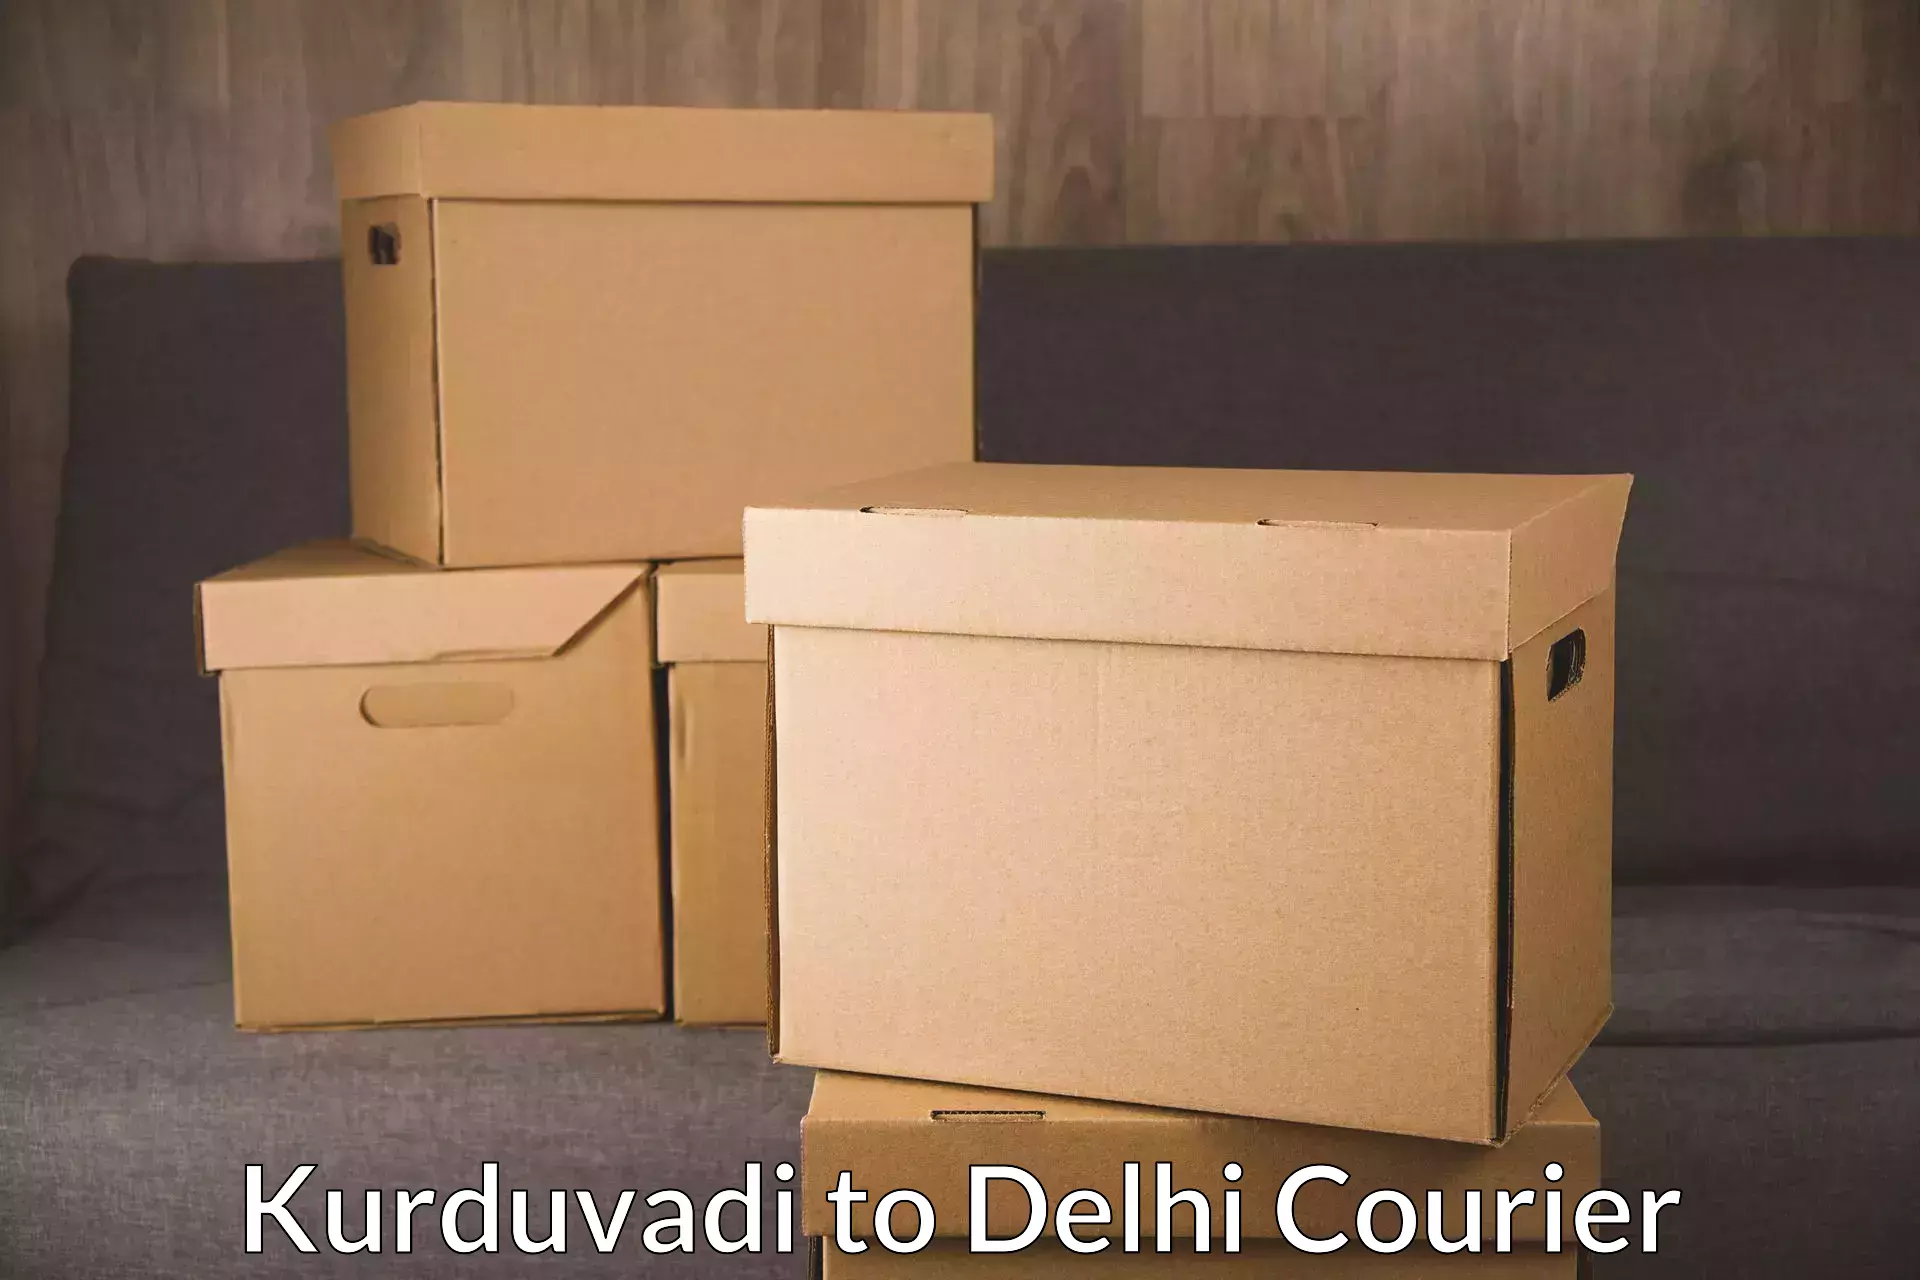 Full-service courier options Kurduvadi to Delhi